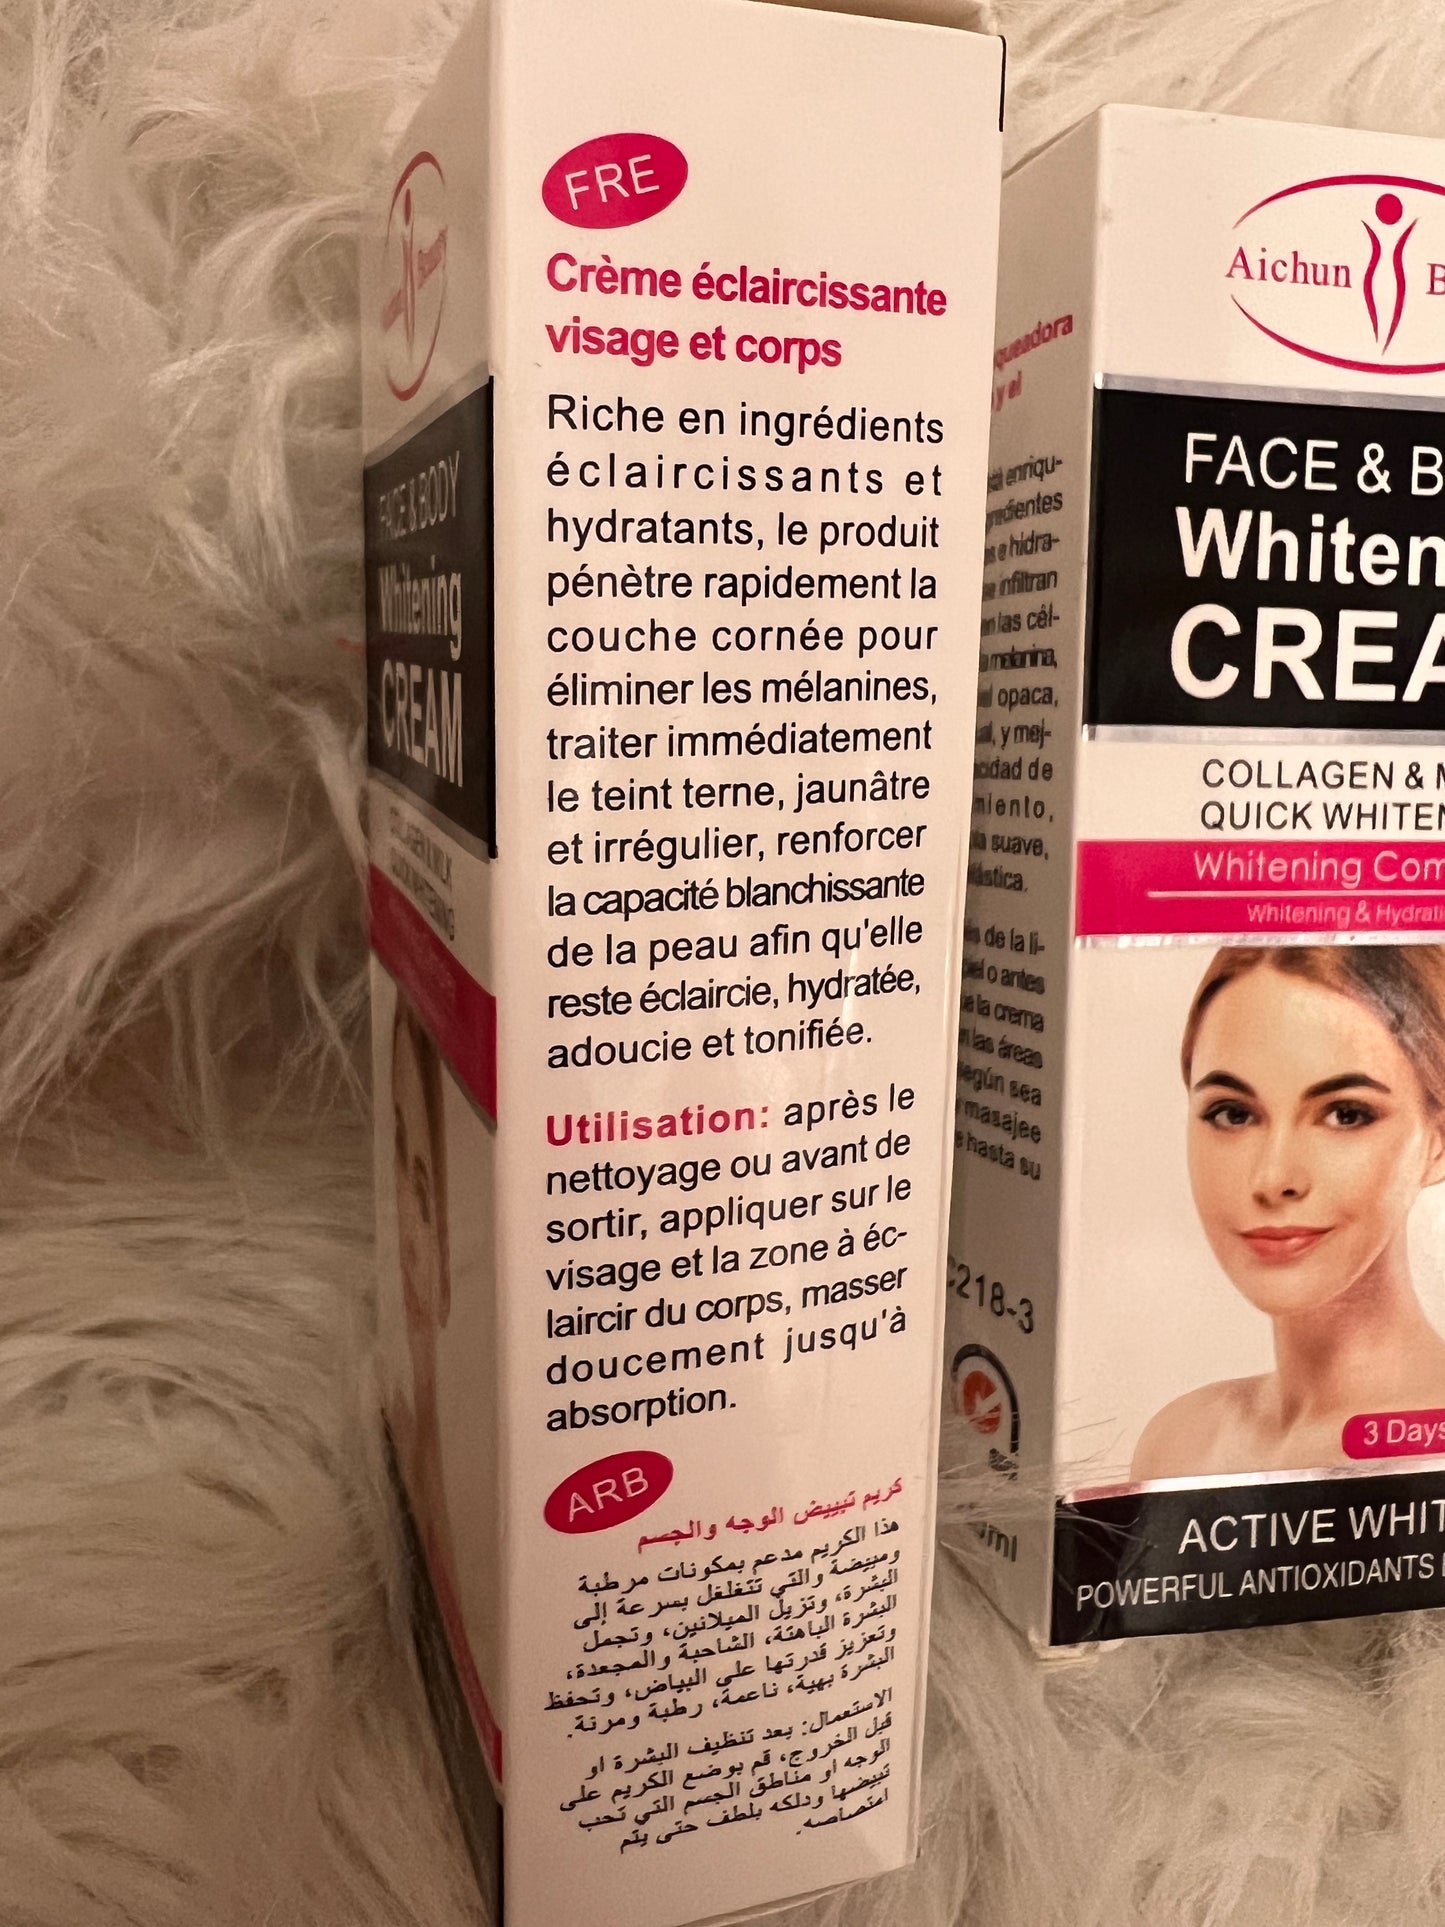 Whitening Cream aichun beauty